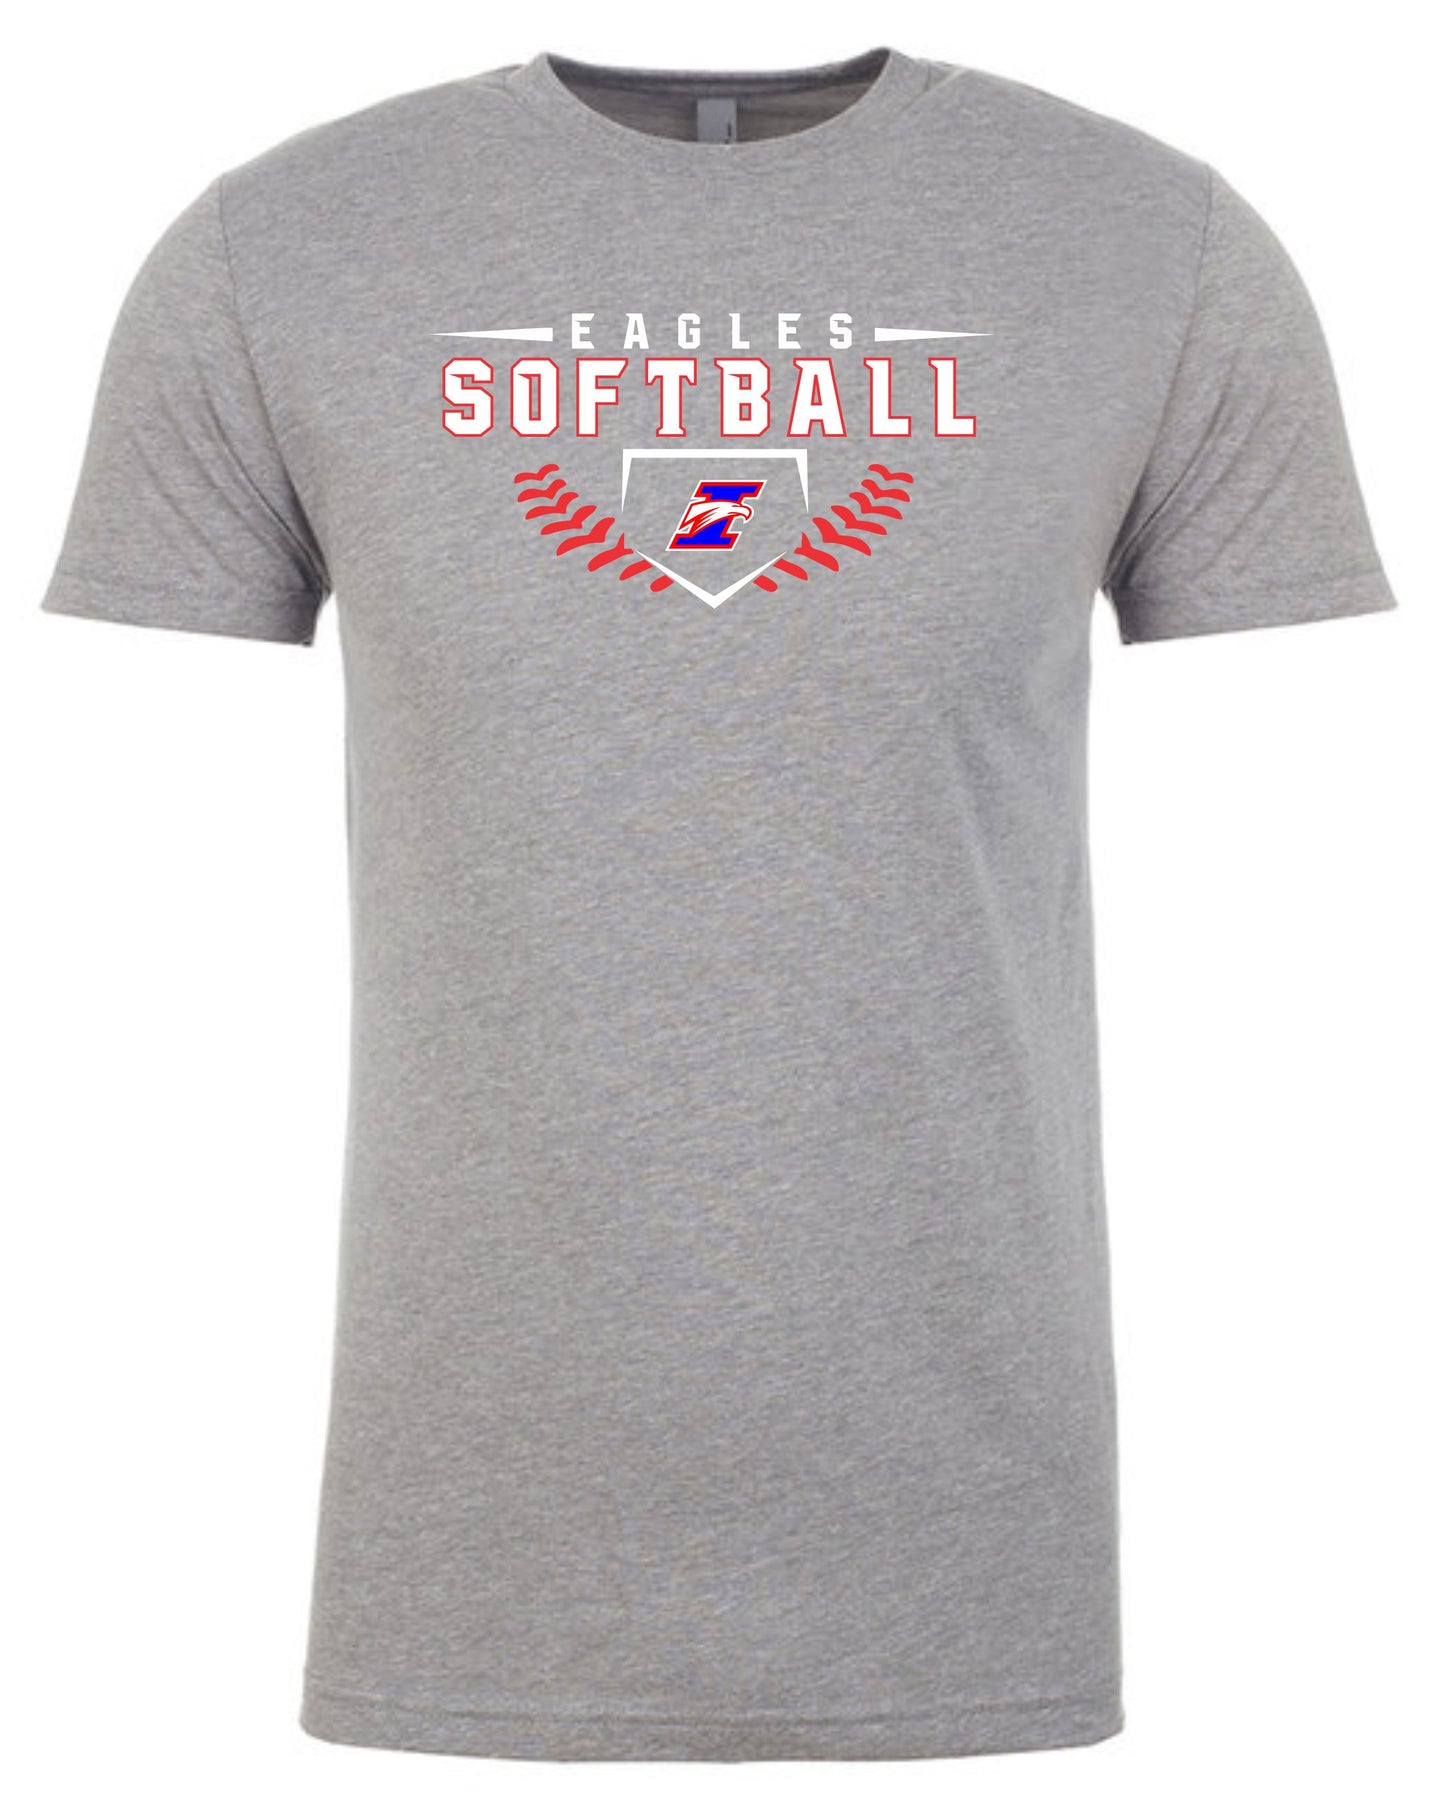 Immanuel Softball Lace T-Shirt